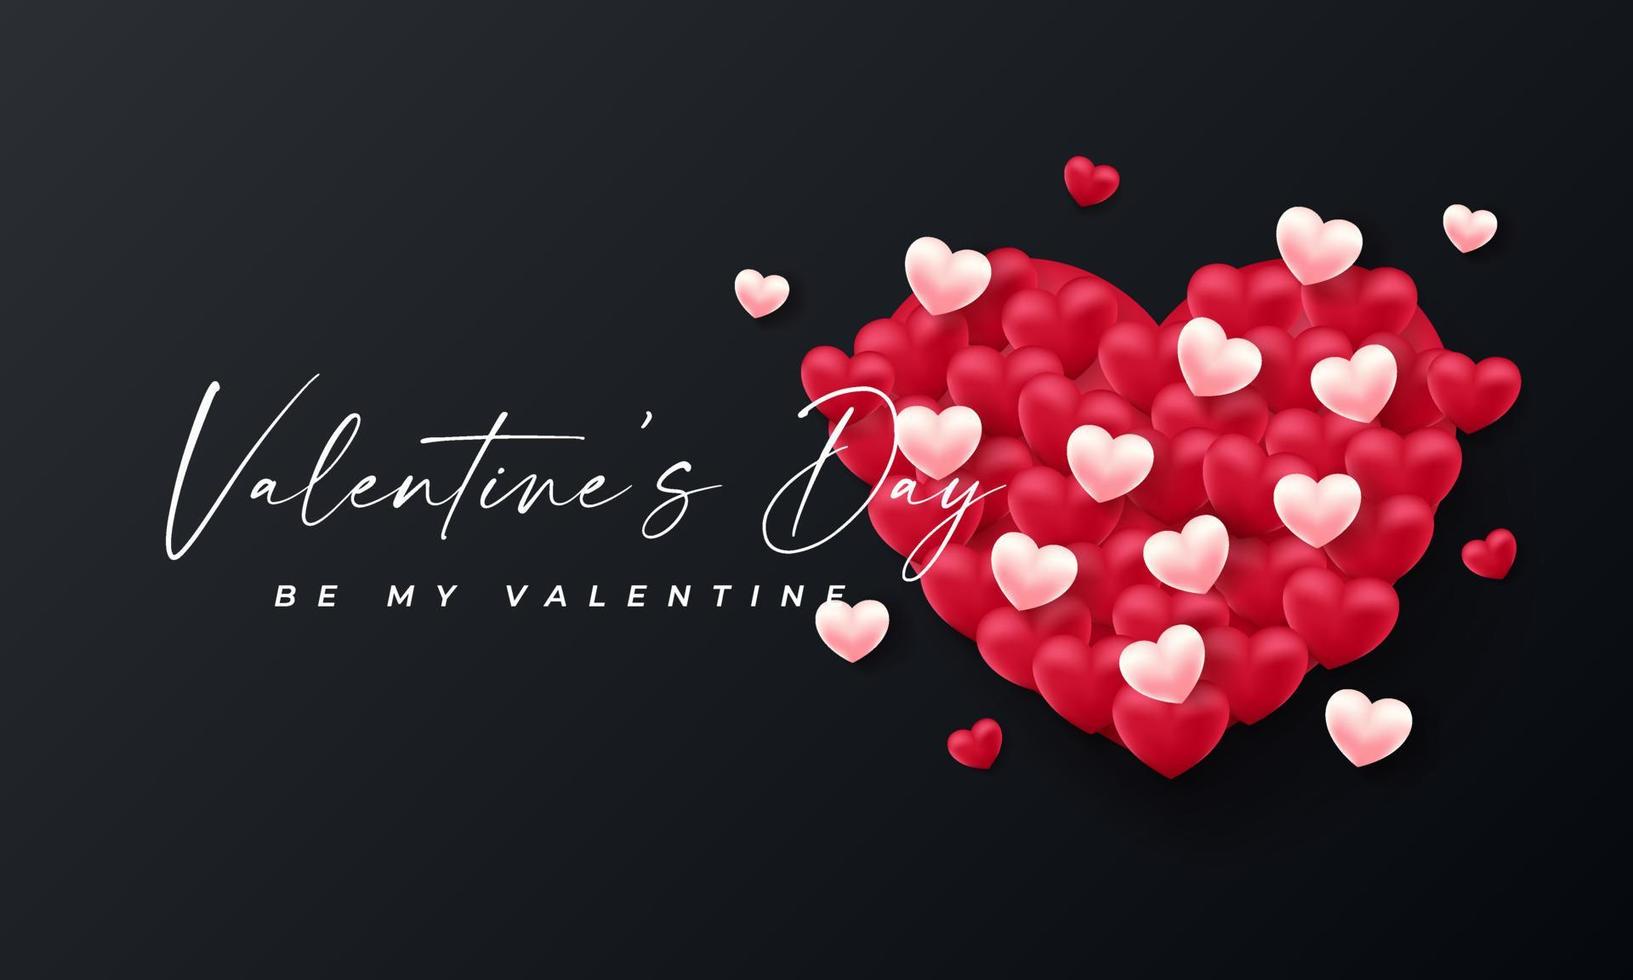 coeurs 3d de la Saint-Valentin. bannière d'amour mignon, carte de voeux romantique joyeux saint valentin souhaite texte, concept vectoriel de ballons coeur rouge